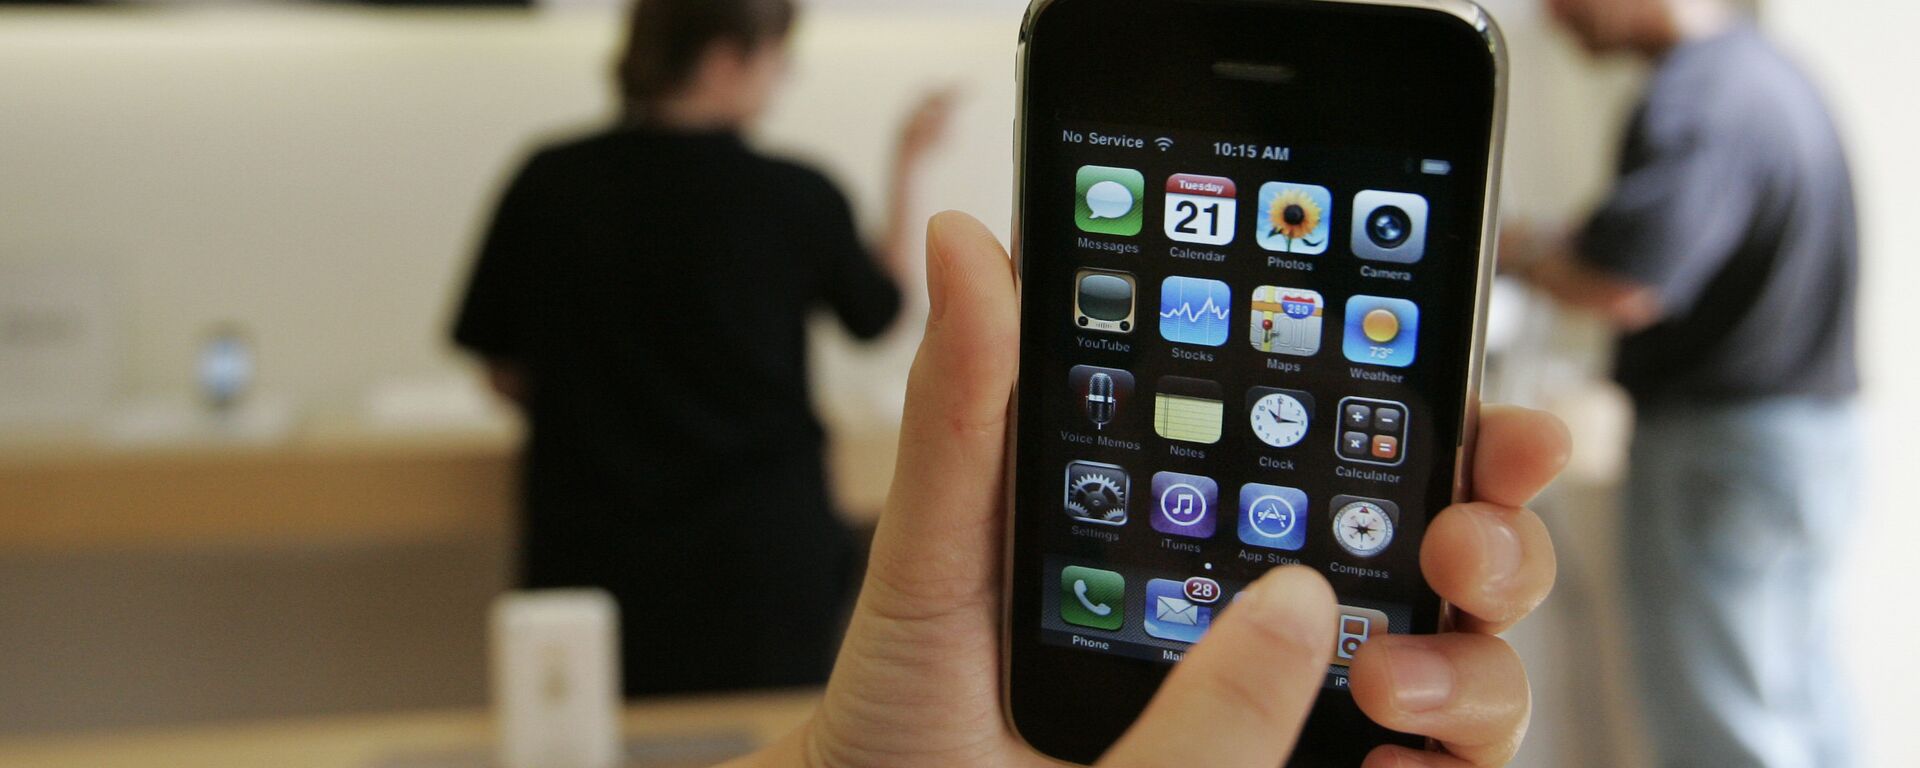 Un cliente muestra un iPhone 3GS de Apple en una tienda Apple en Palo Alto, California en 2009.   - Sputnik Mundo, 1920, 27.04.2021